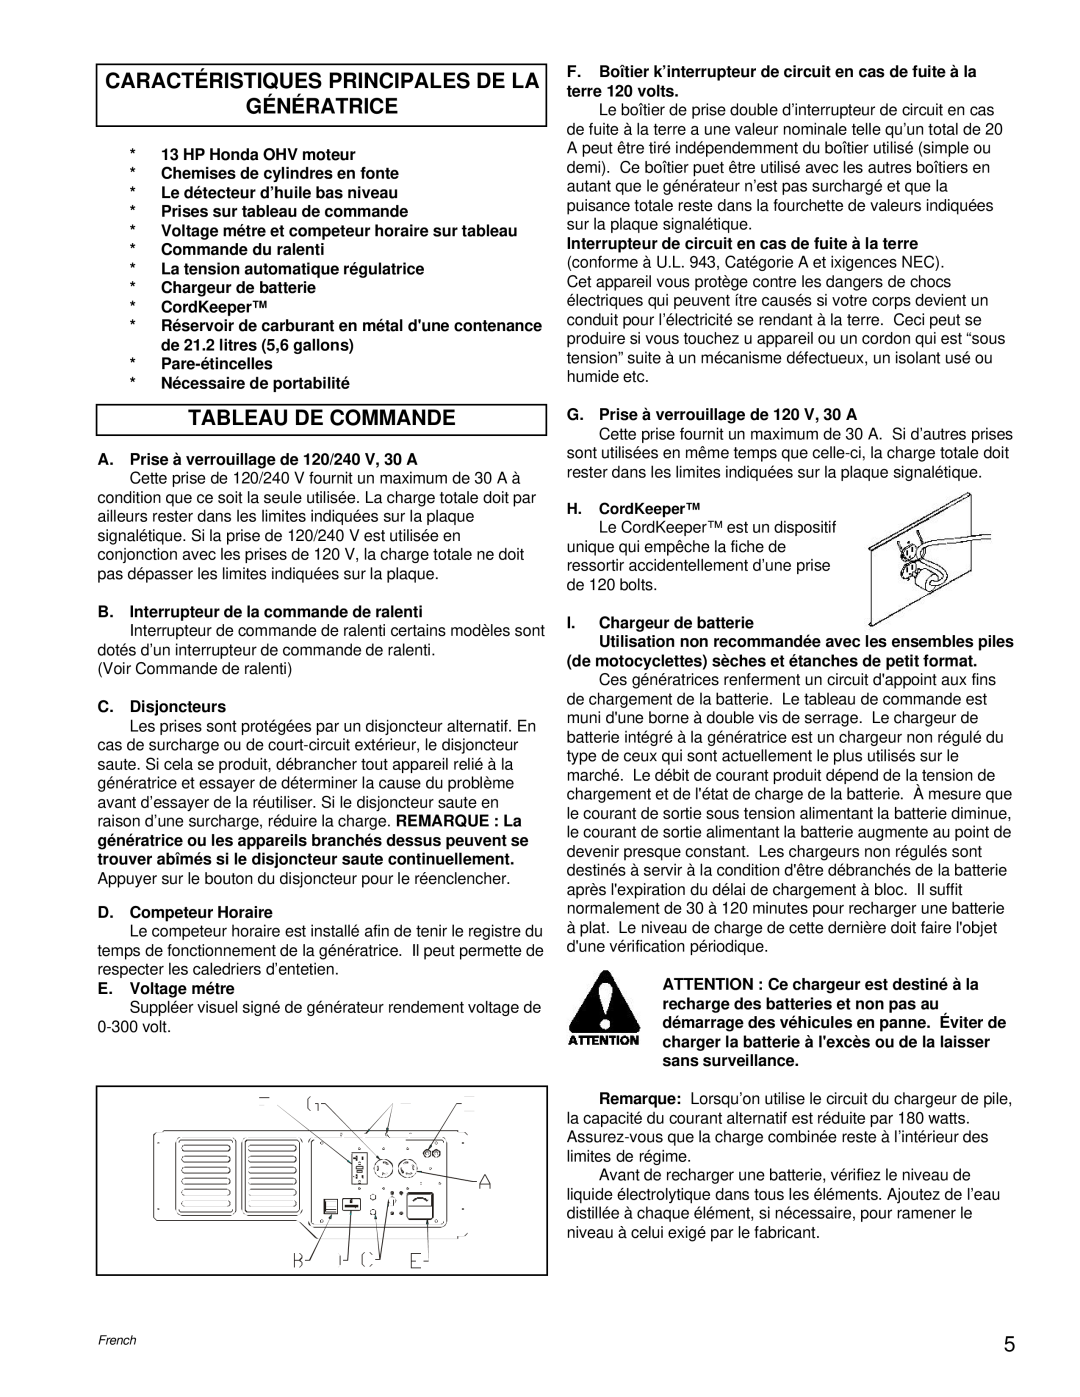 Powermate PL0496504.17 manual Caractéristiques Principales De La Génératrice, Tableau De Commande 